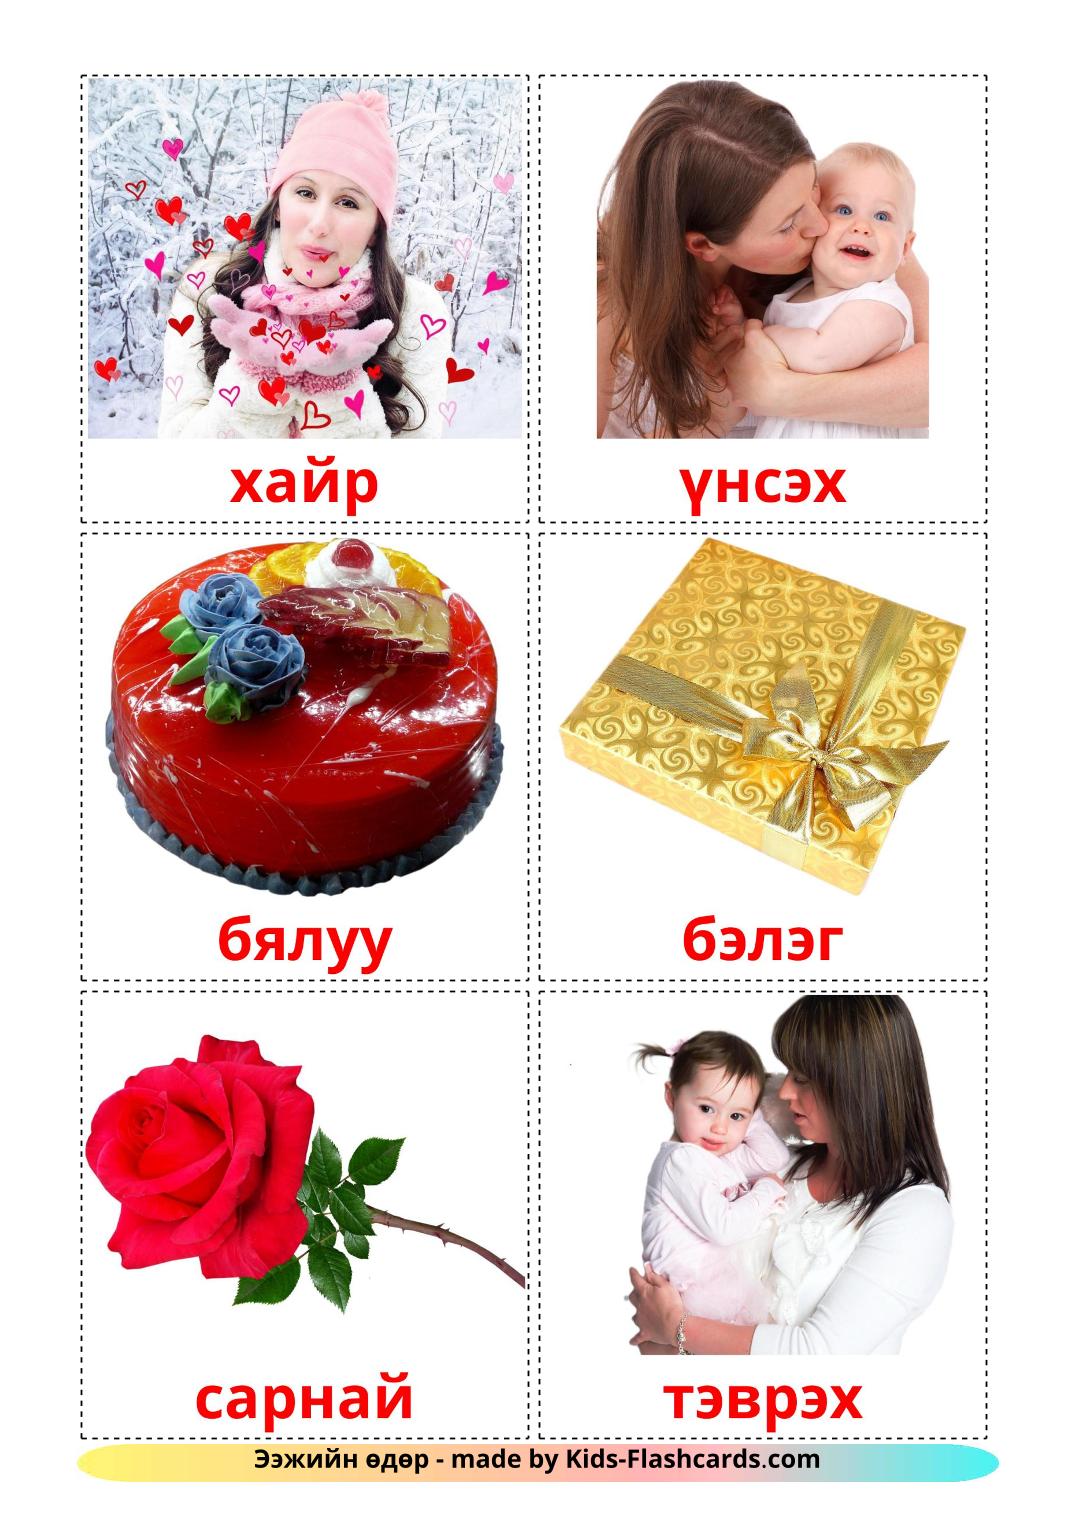 Día de la madre - 25 fichas de mongol para imprimir gratis 